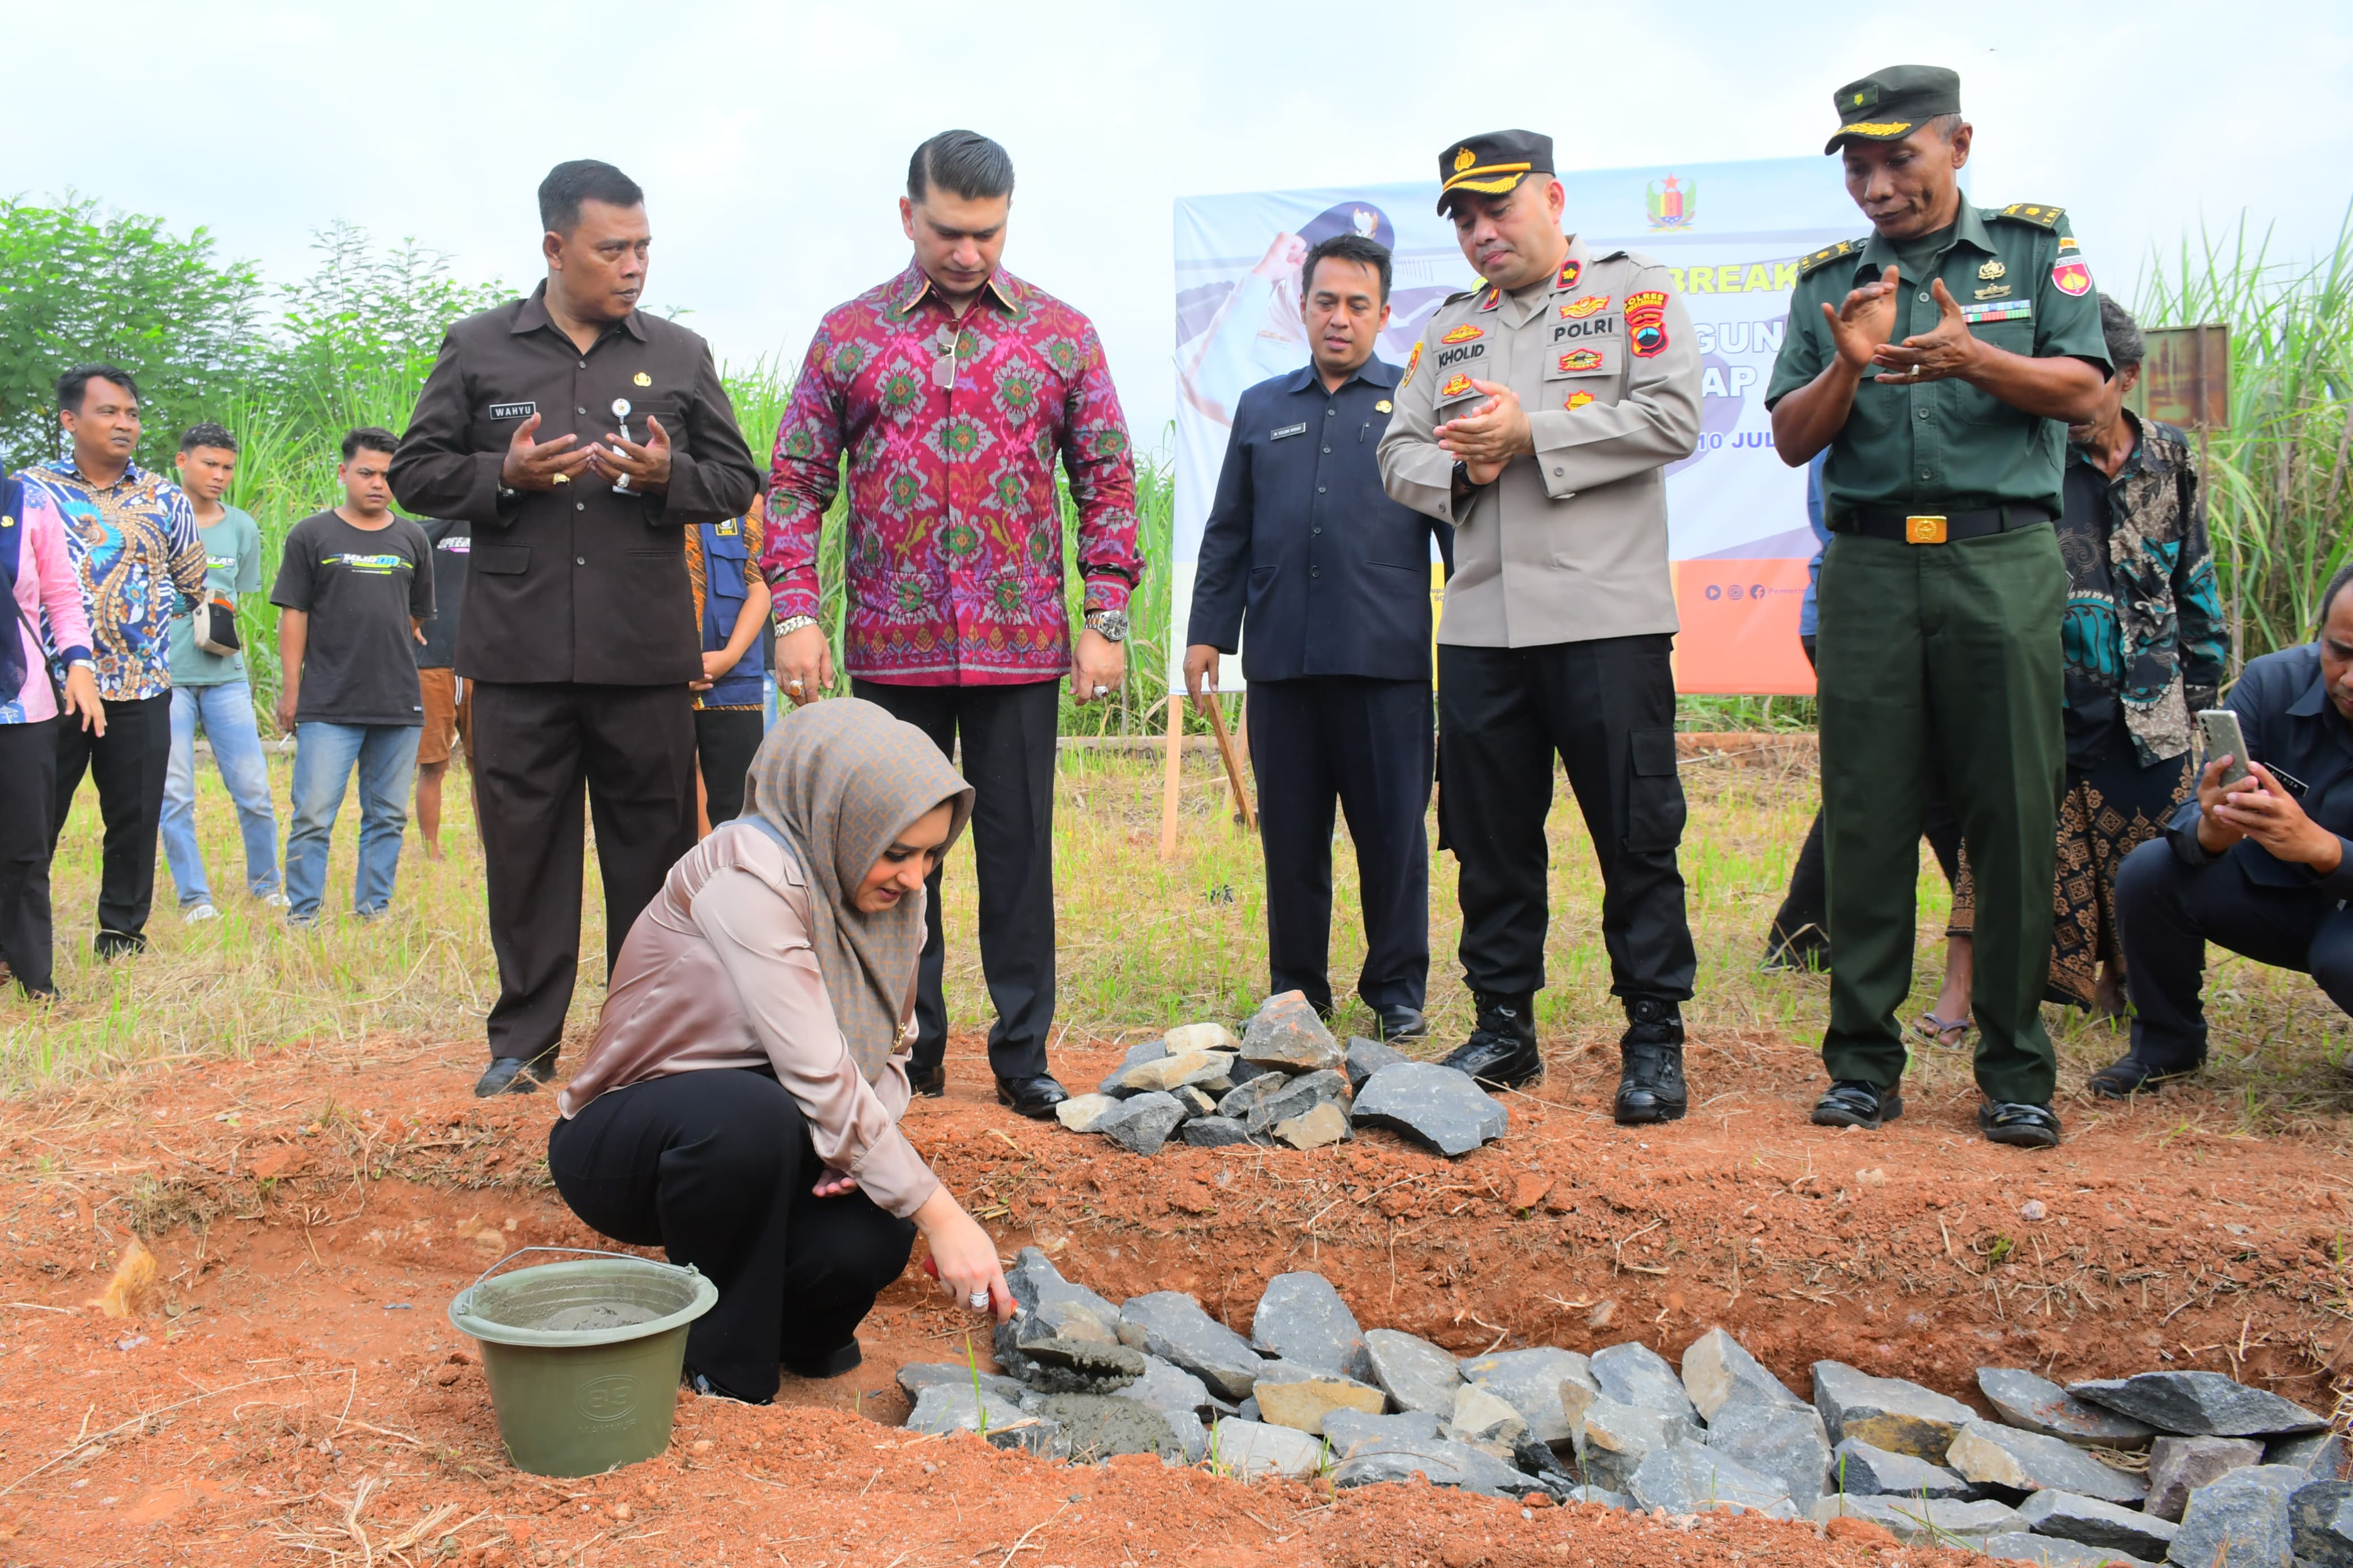 Bupati Fadia Arafiq Ground Breaking Pembangunan Sarana Balap Motor, Fasilitasi Hobi Anak Muda